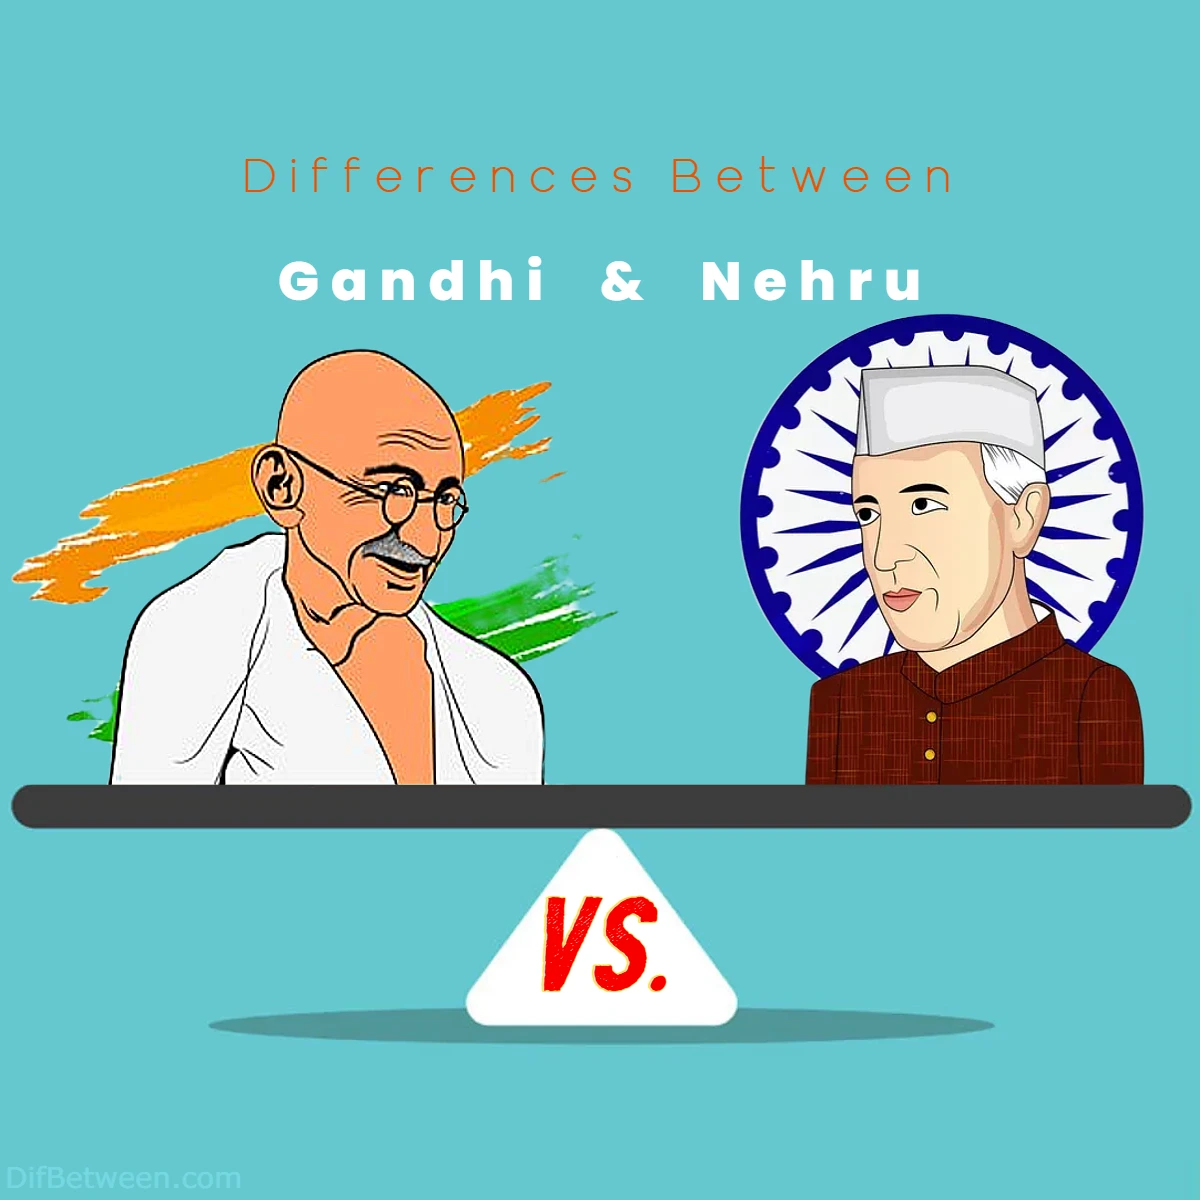 Differences Between Gandhi vs Nehru